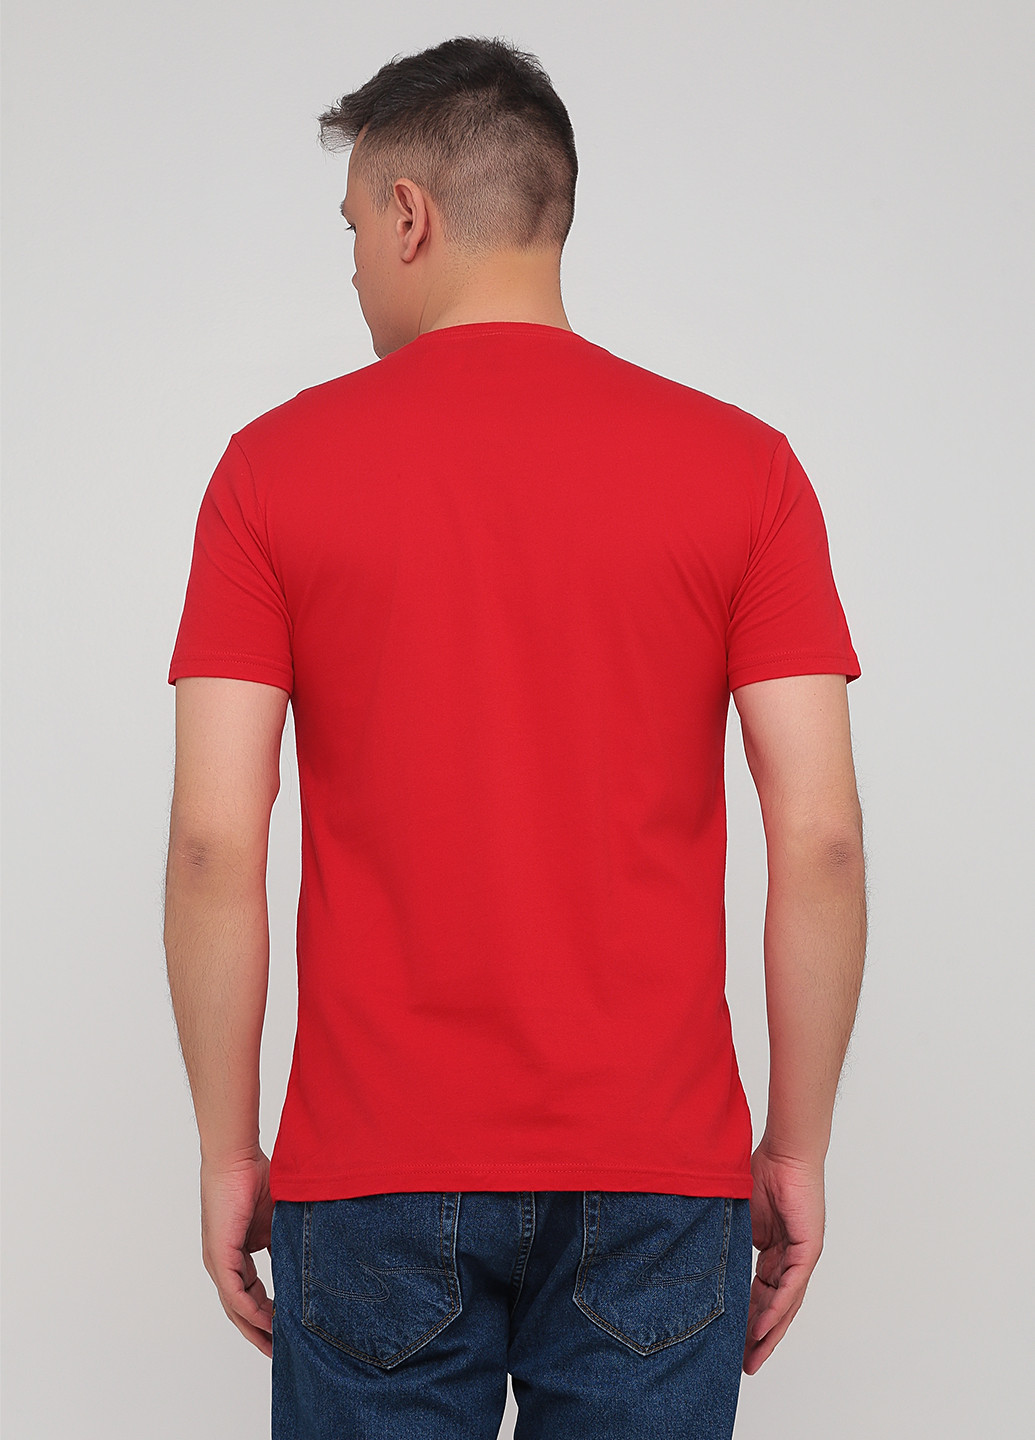 Червона футболка Next Level Apparel